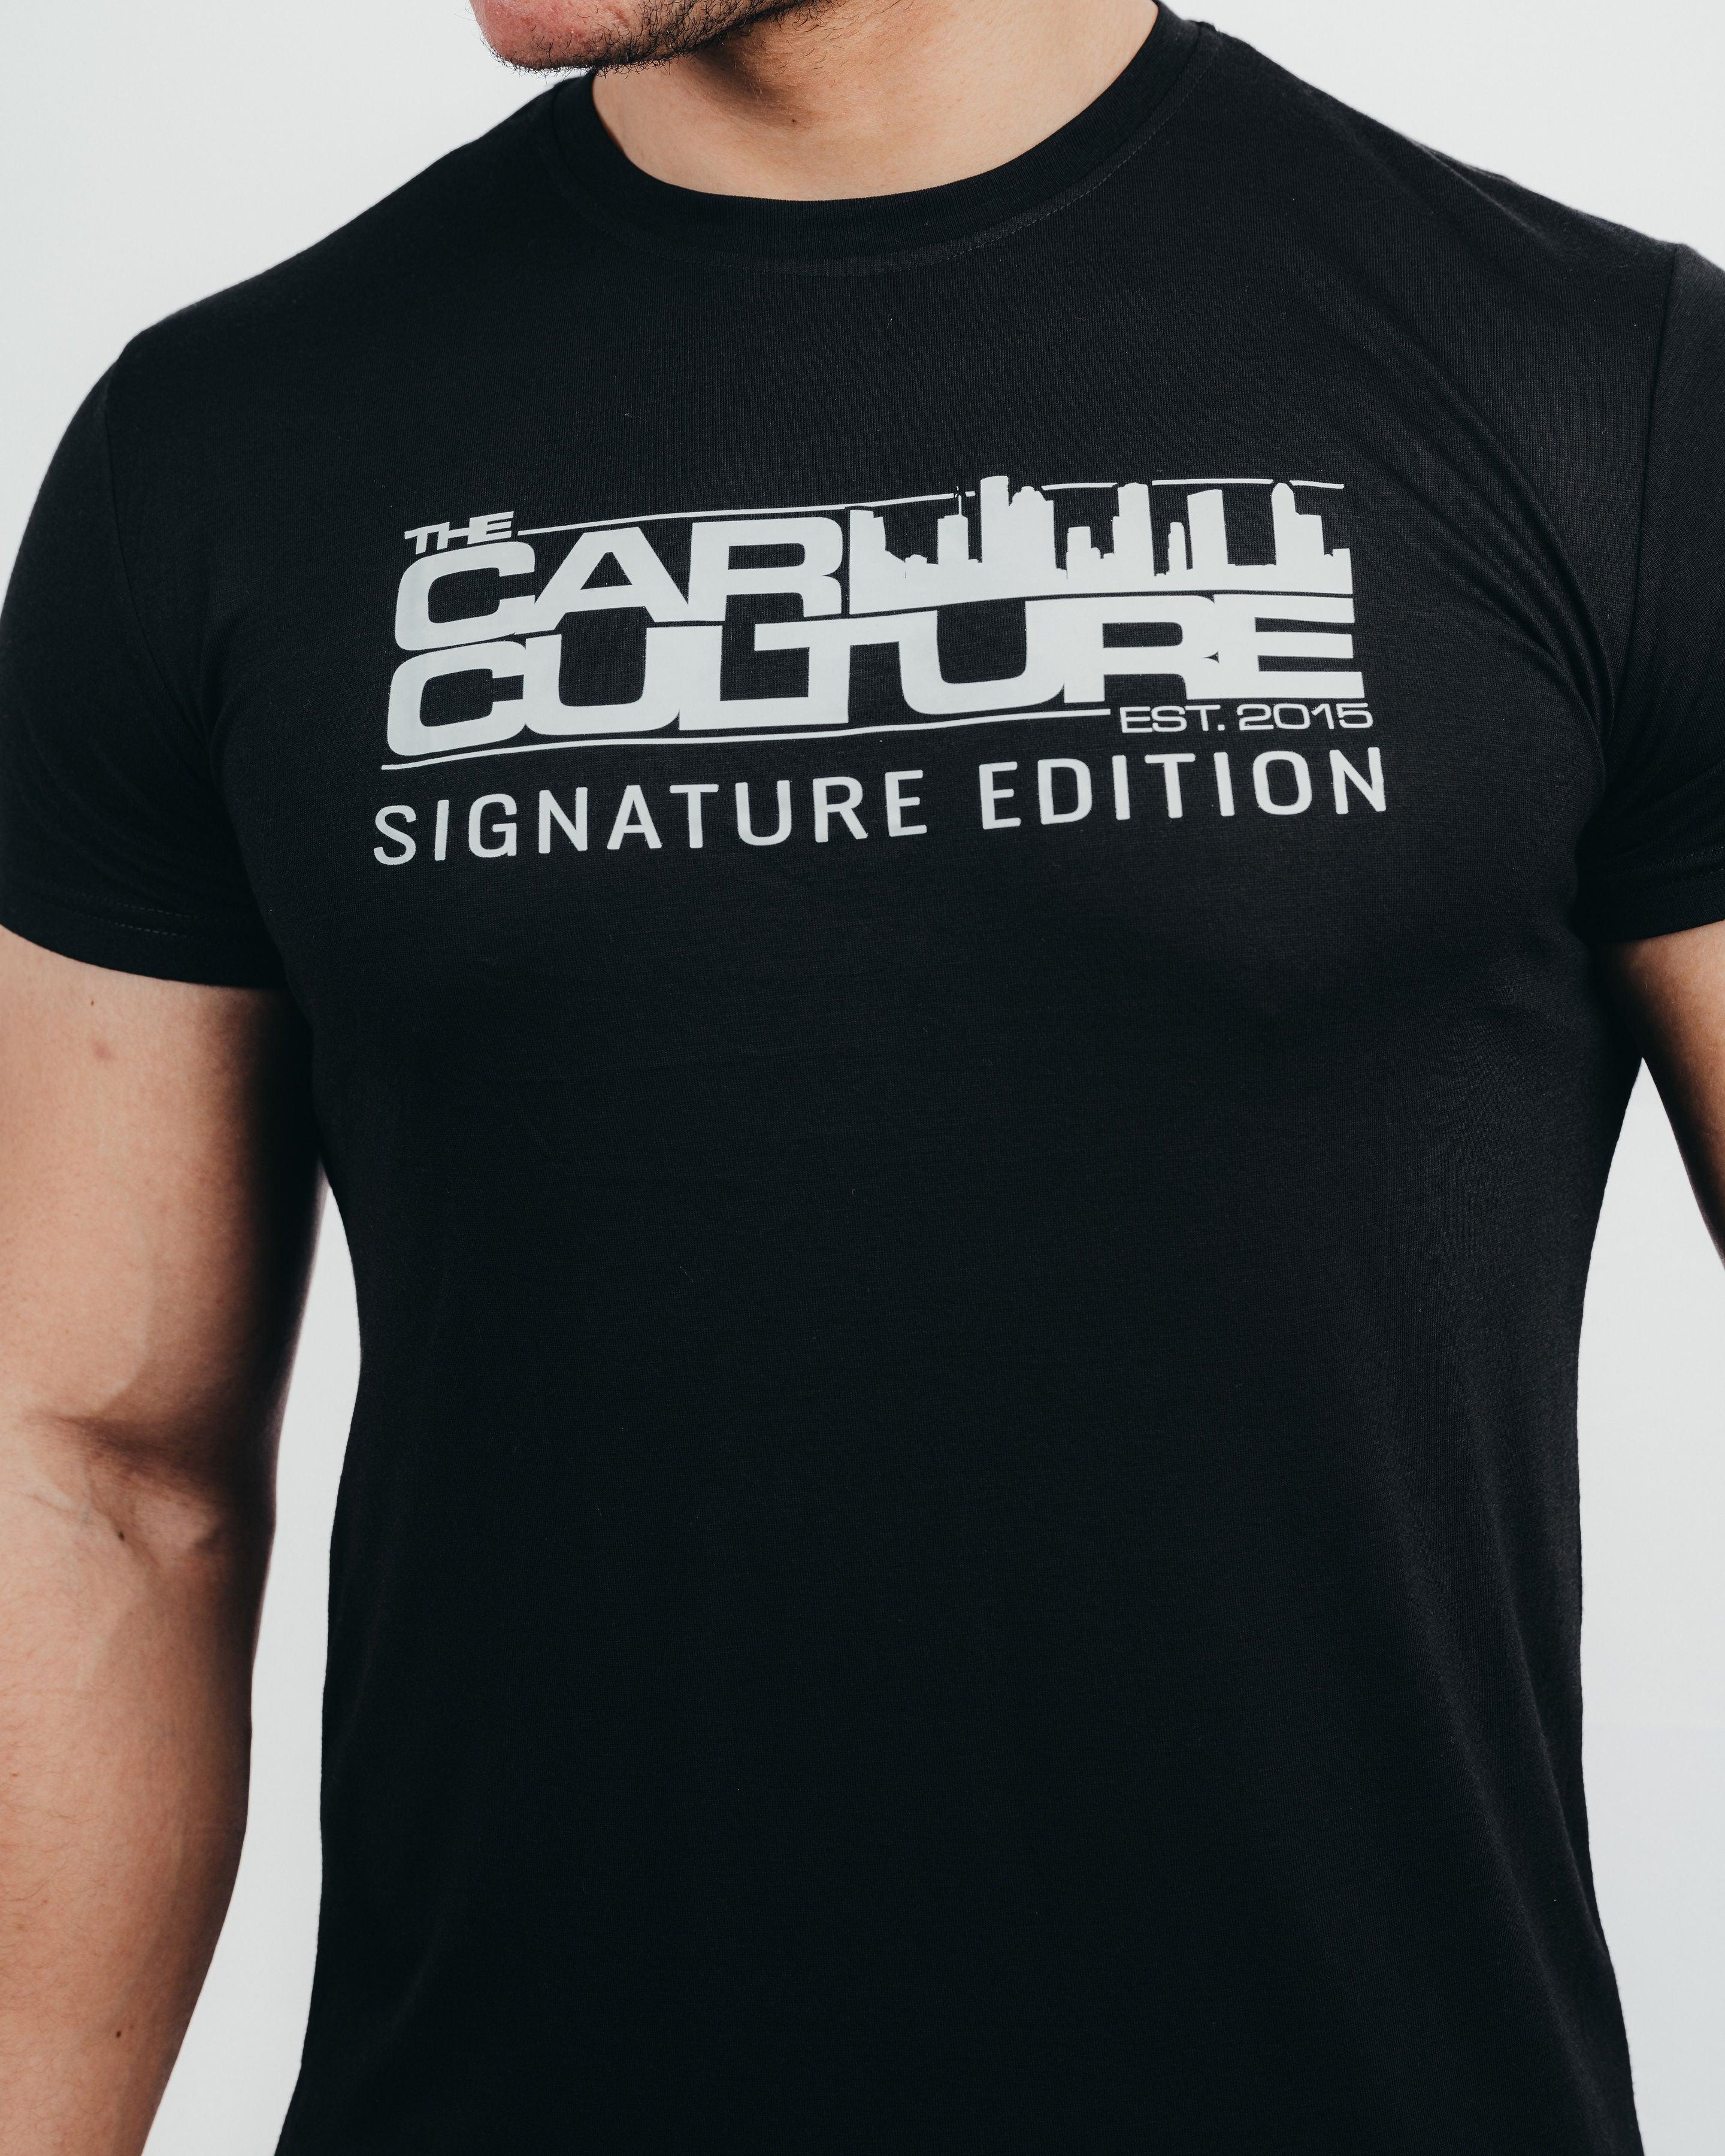 Car Culture Signature Edition T-shirt - The Car Culture